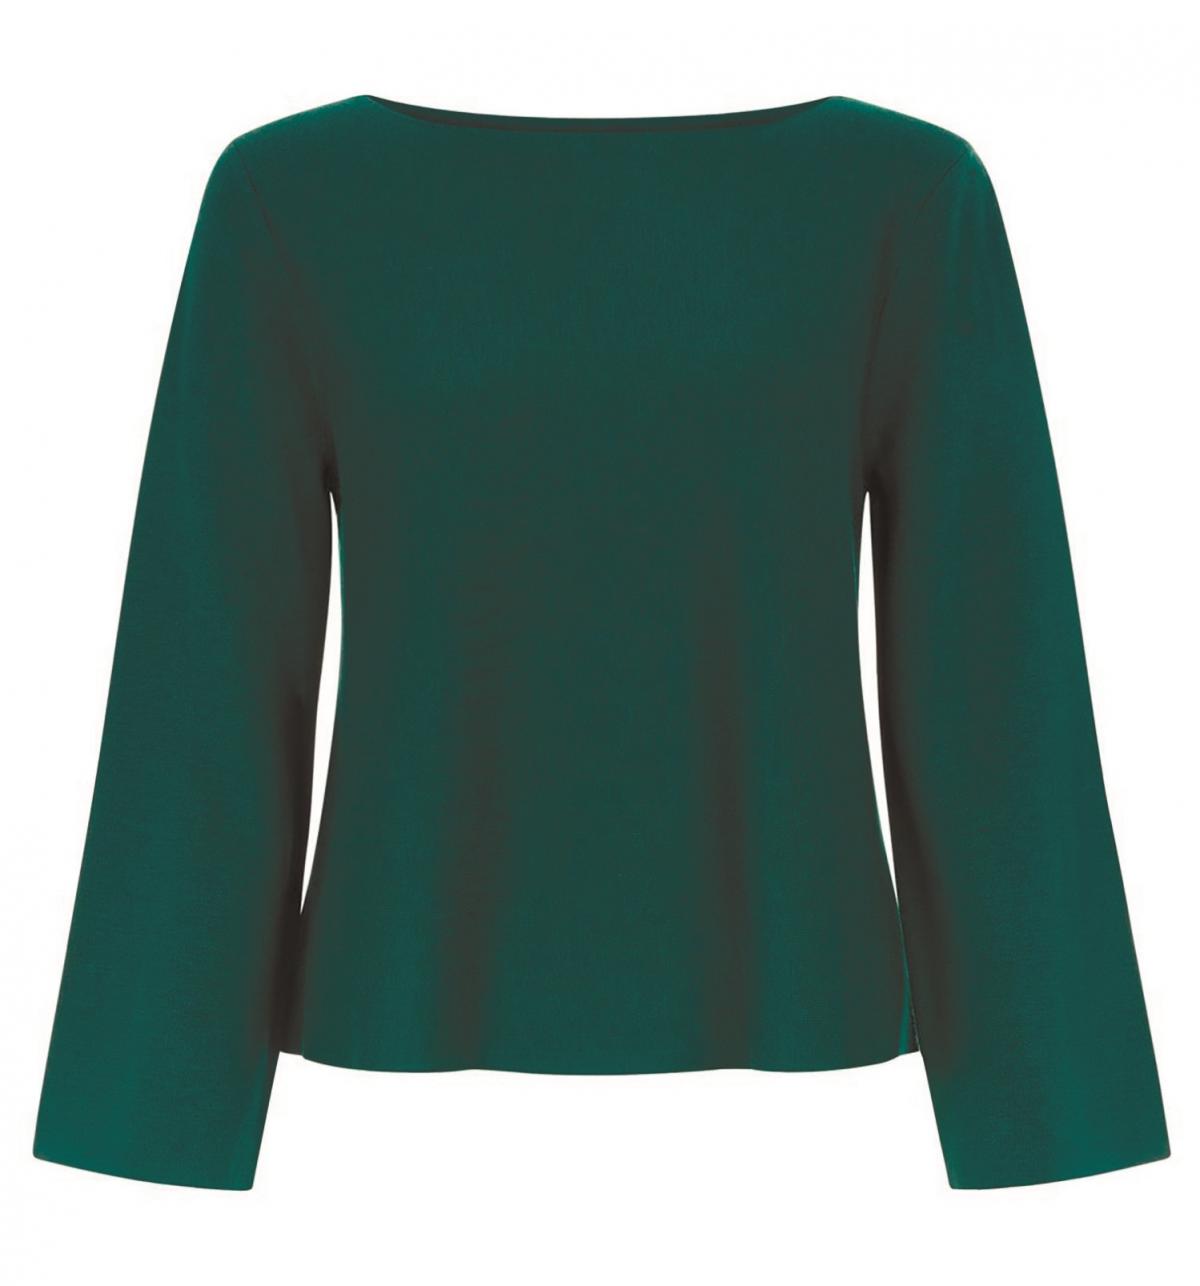 Hobbs, Harbour Sweater, £79